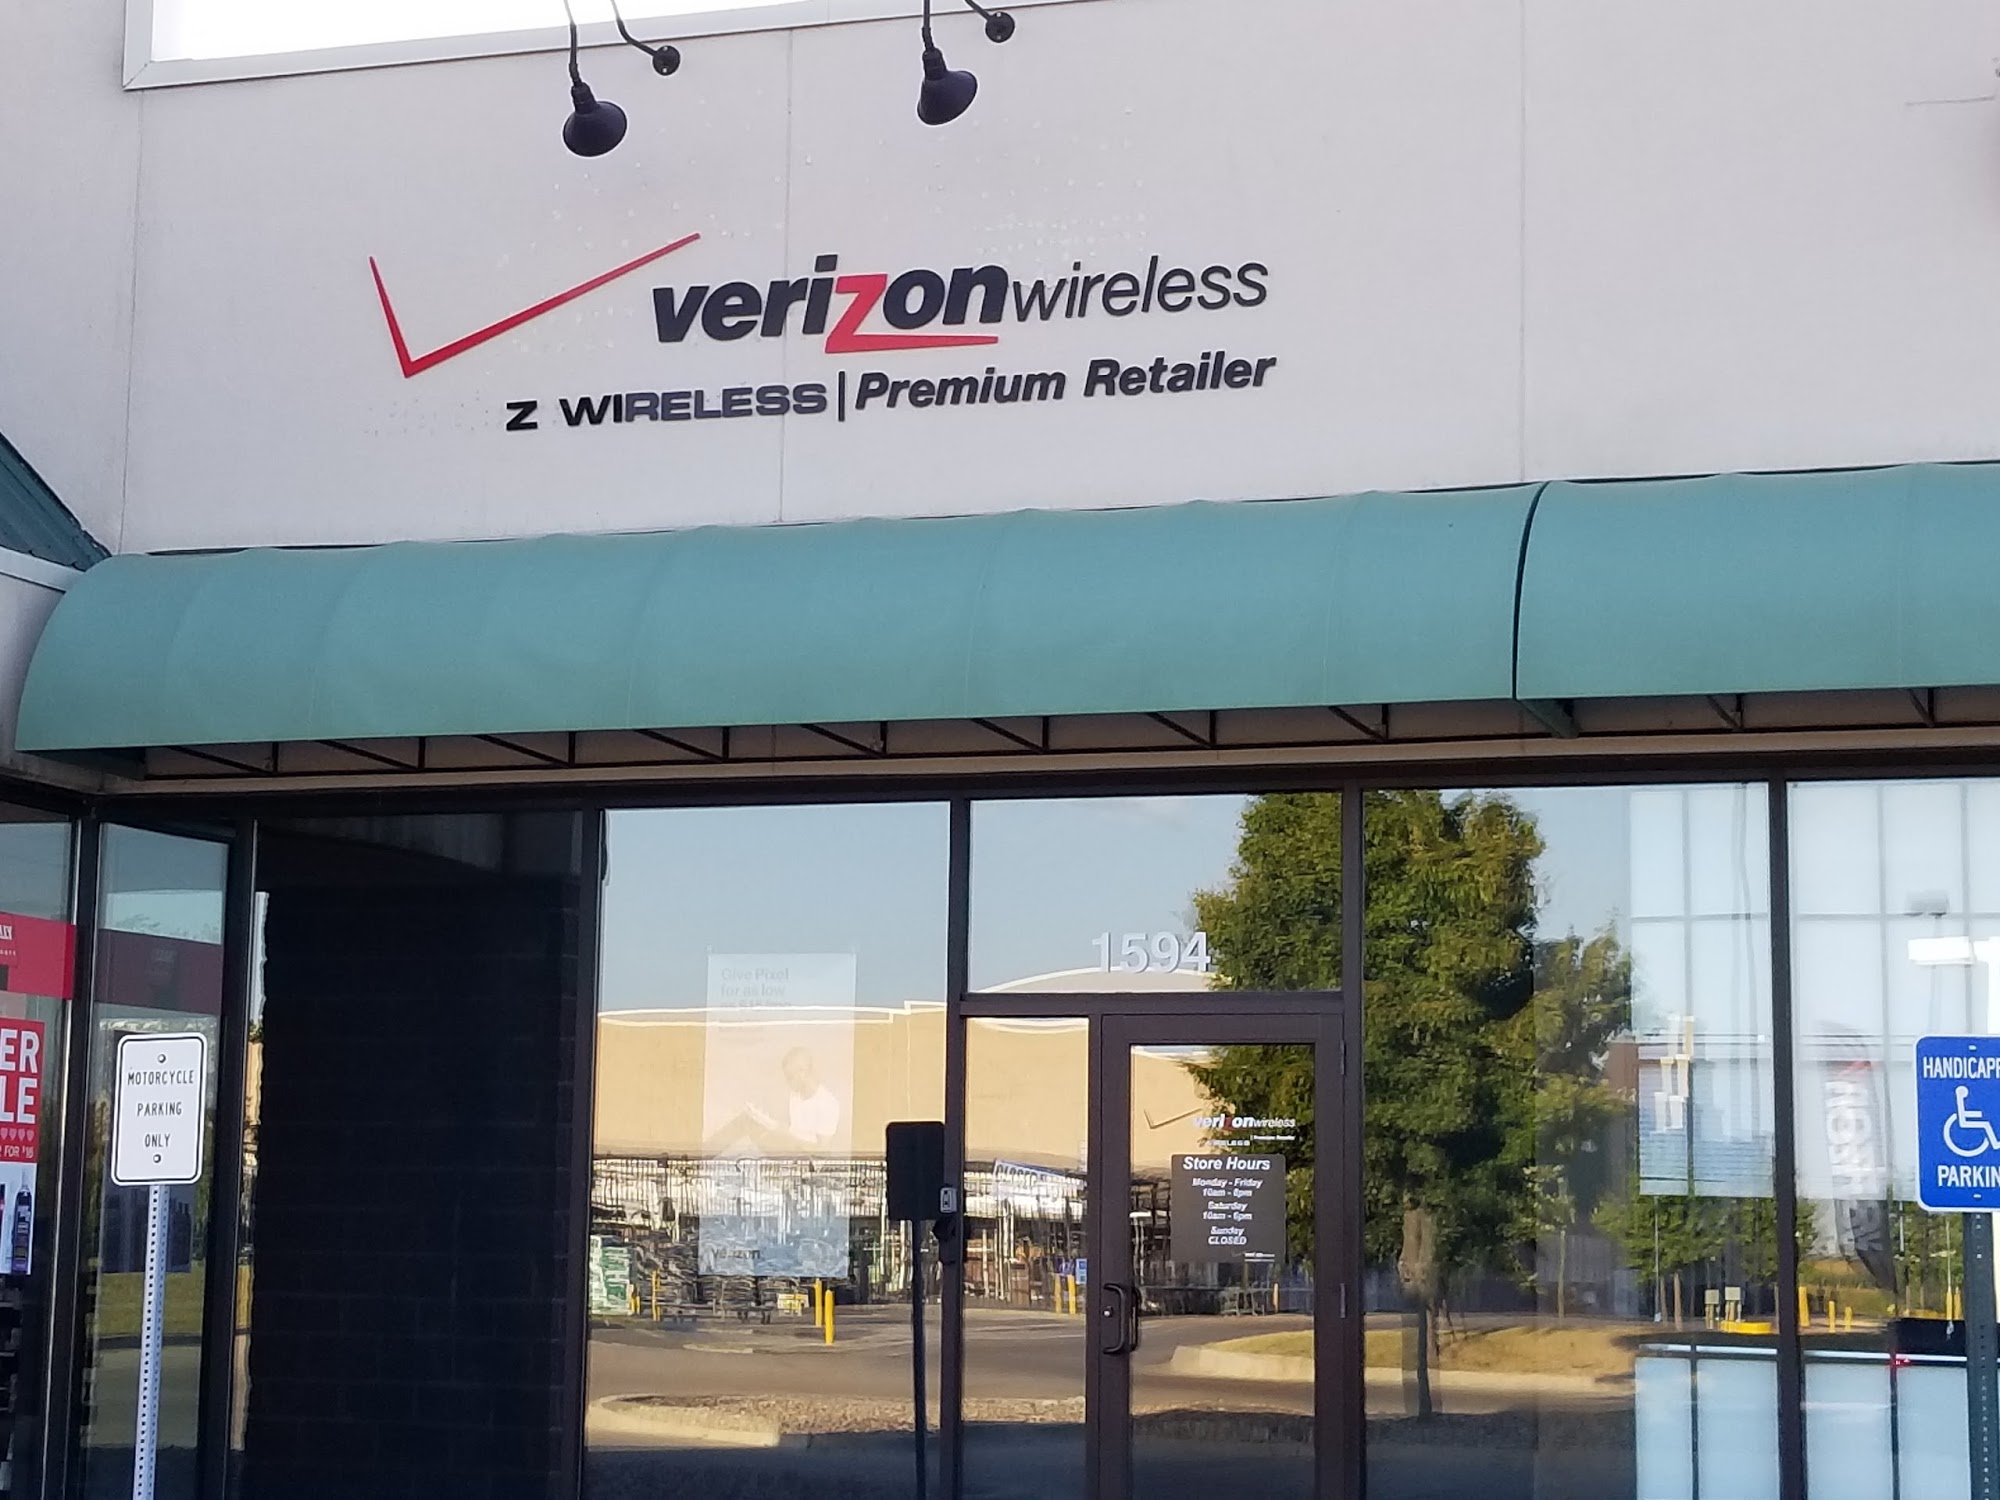 Verizon Wireless - Z Wireless